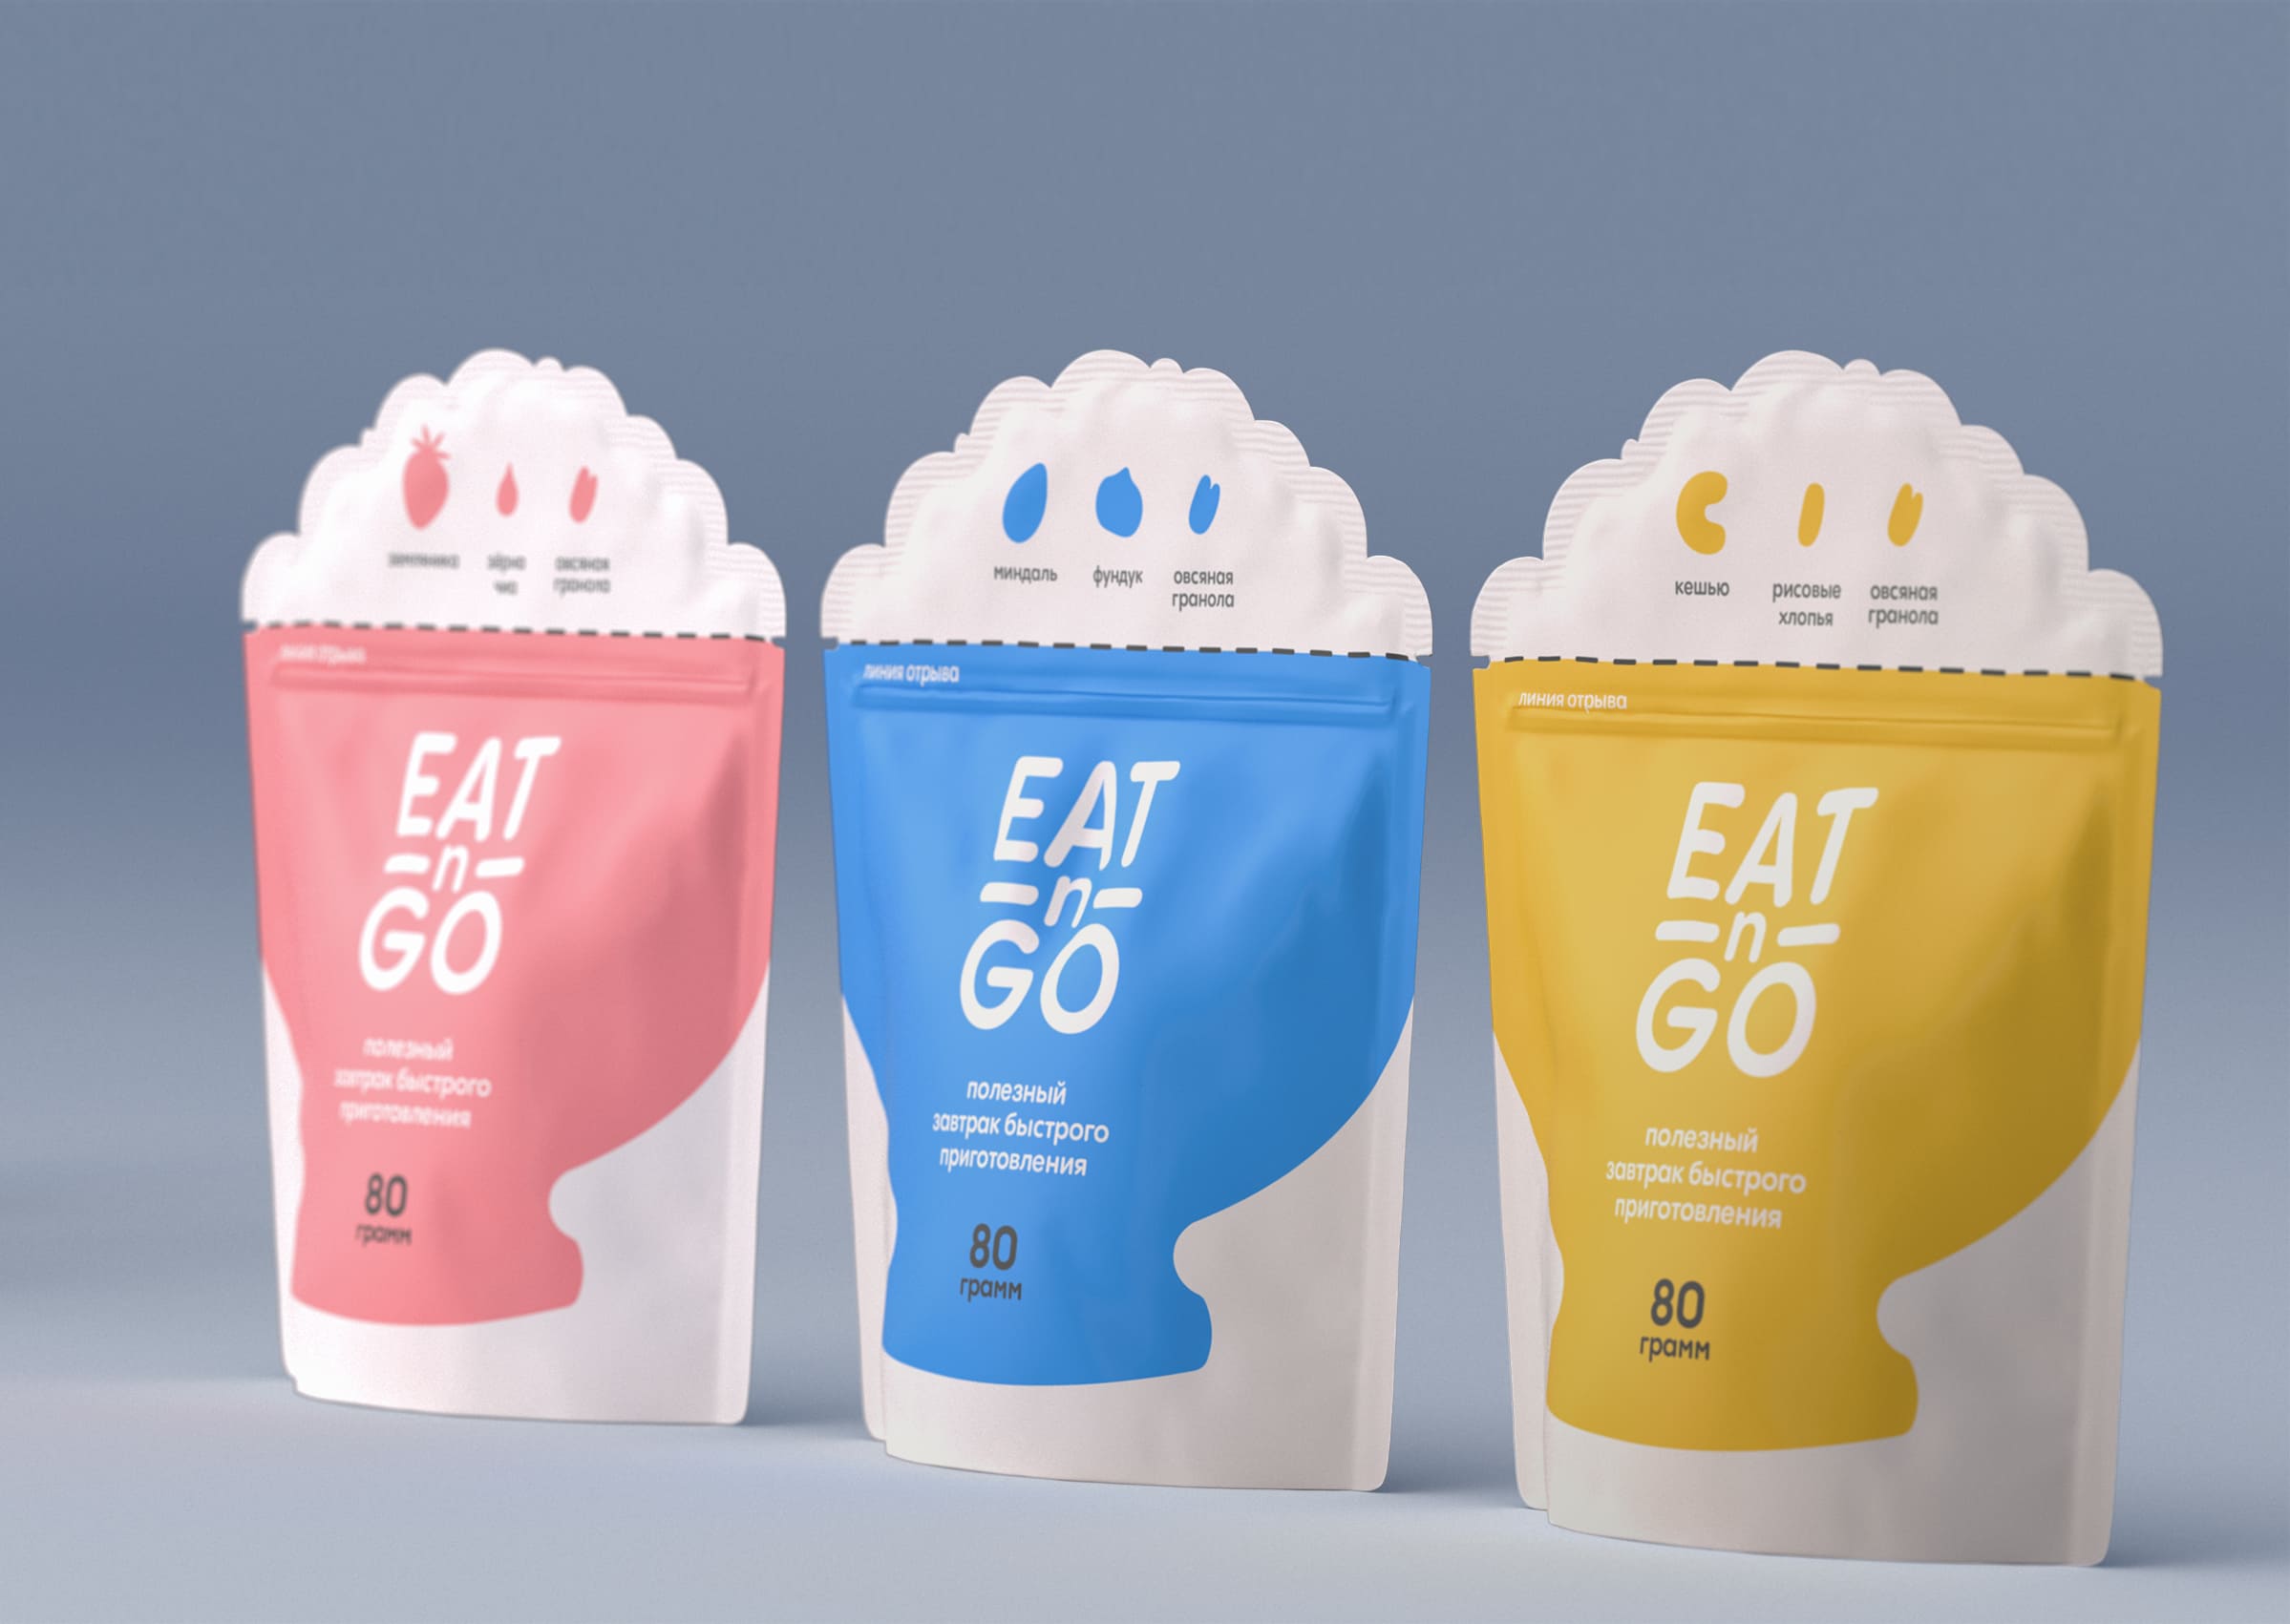 包装设计分享|Eat-N-Go 学生包装设计即食燕麦片包装设计创意理念